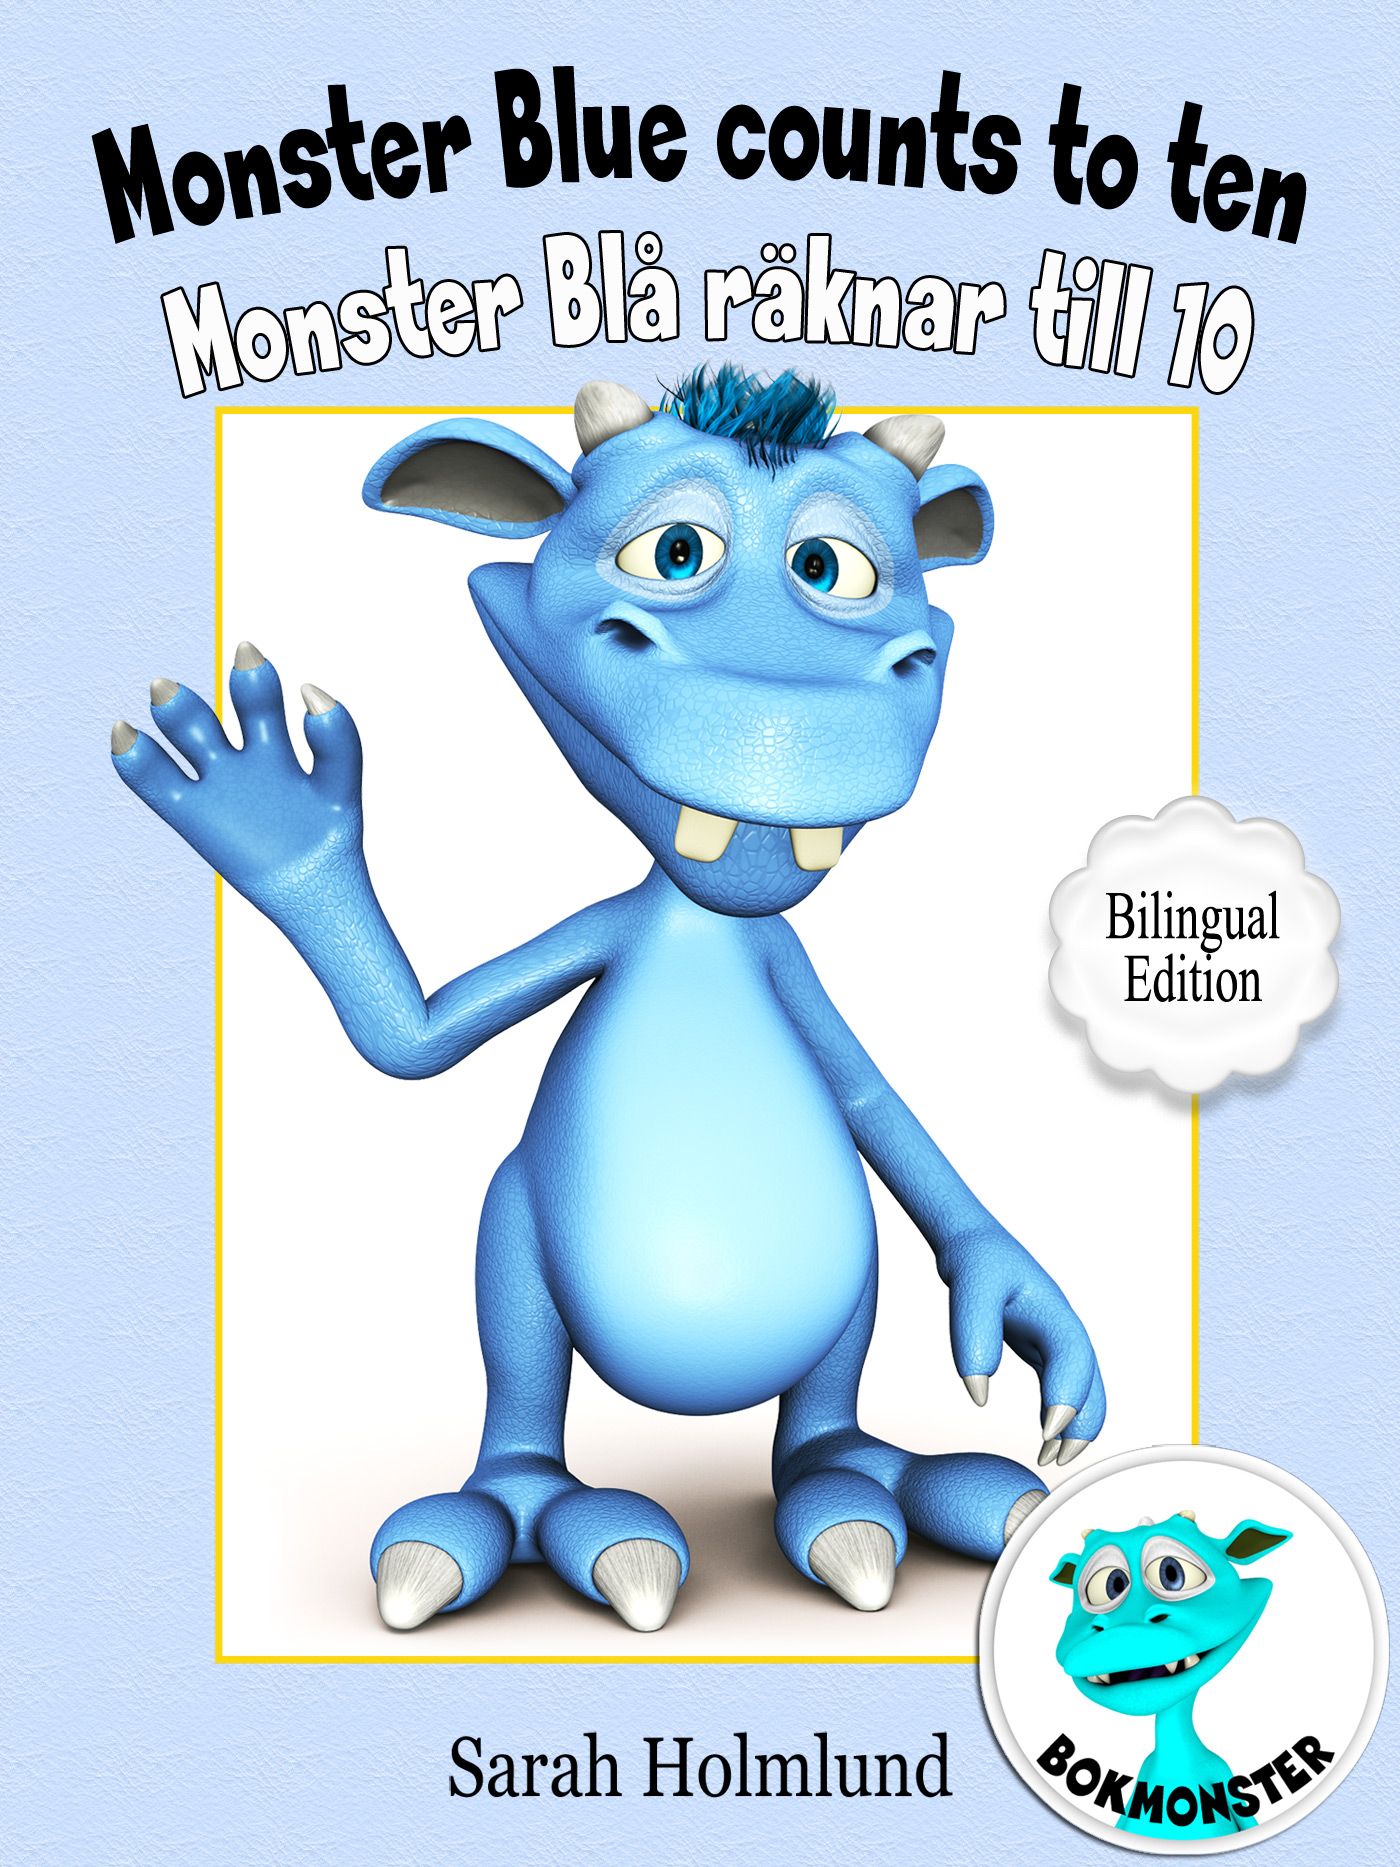 Monster Blue counts to ten  - Monster Blå räknar till 10 - Bilingual Edition, e-bok av Sarah Holmlund